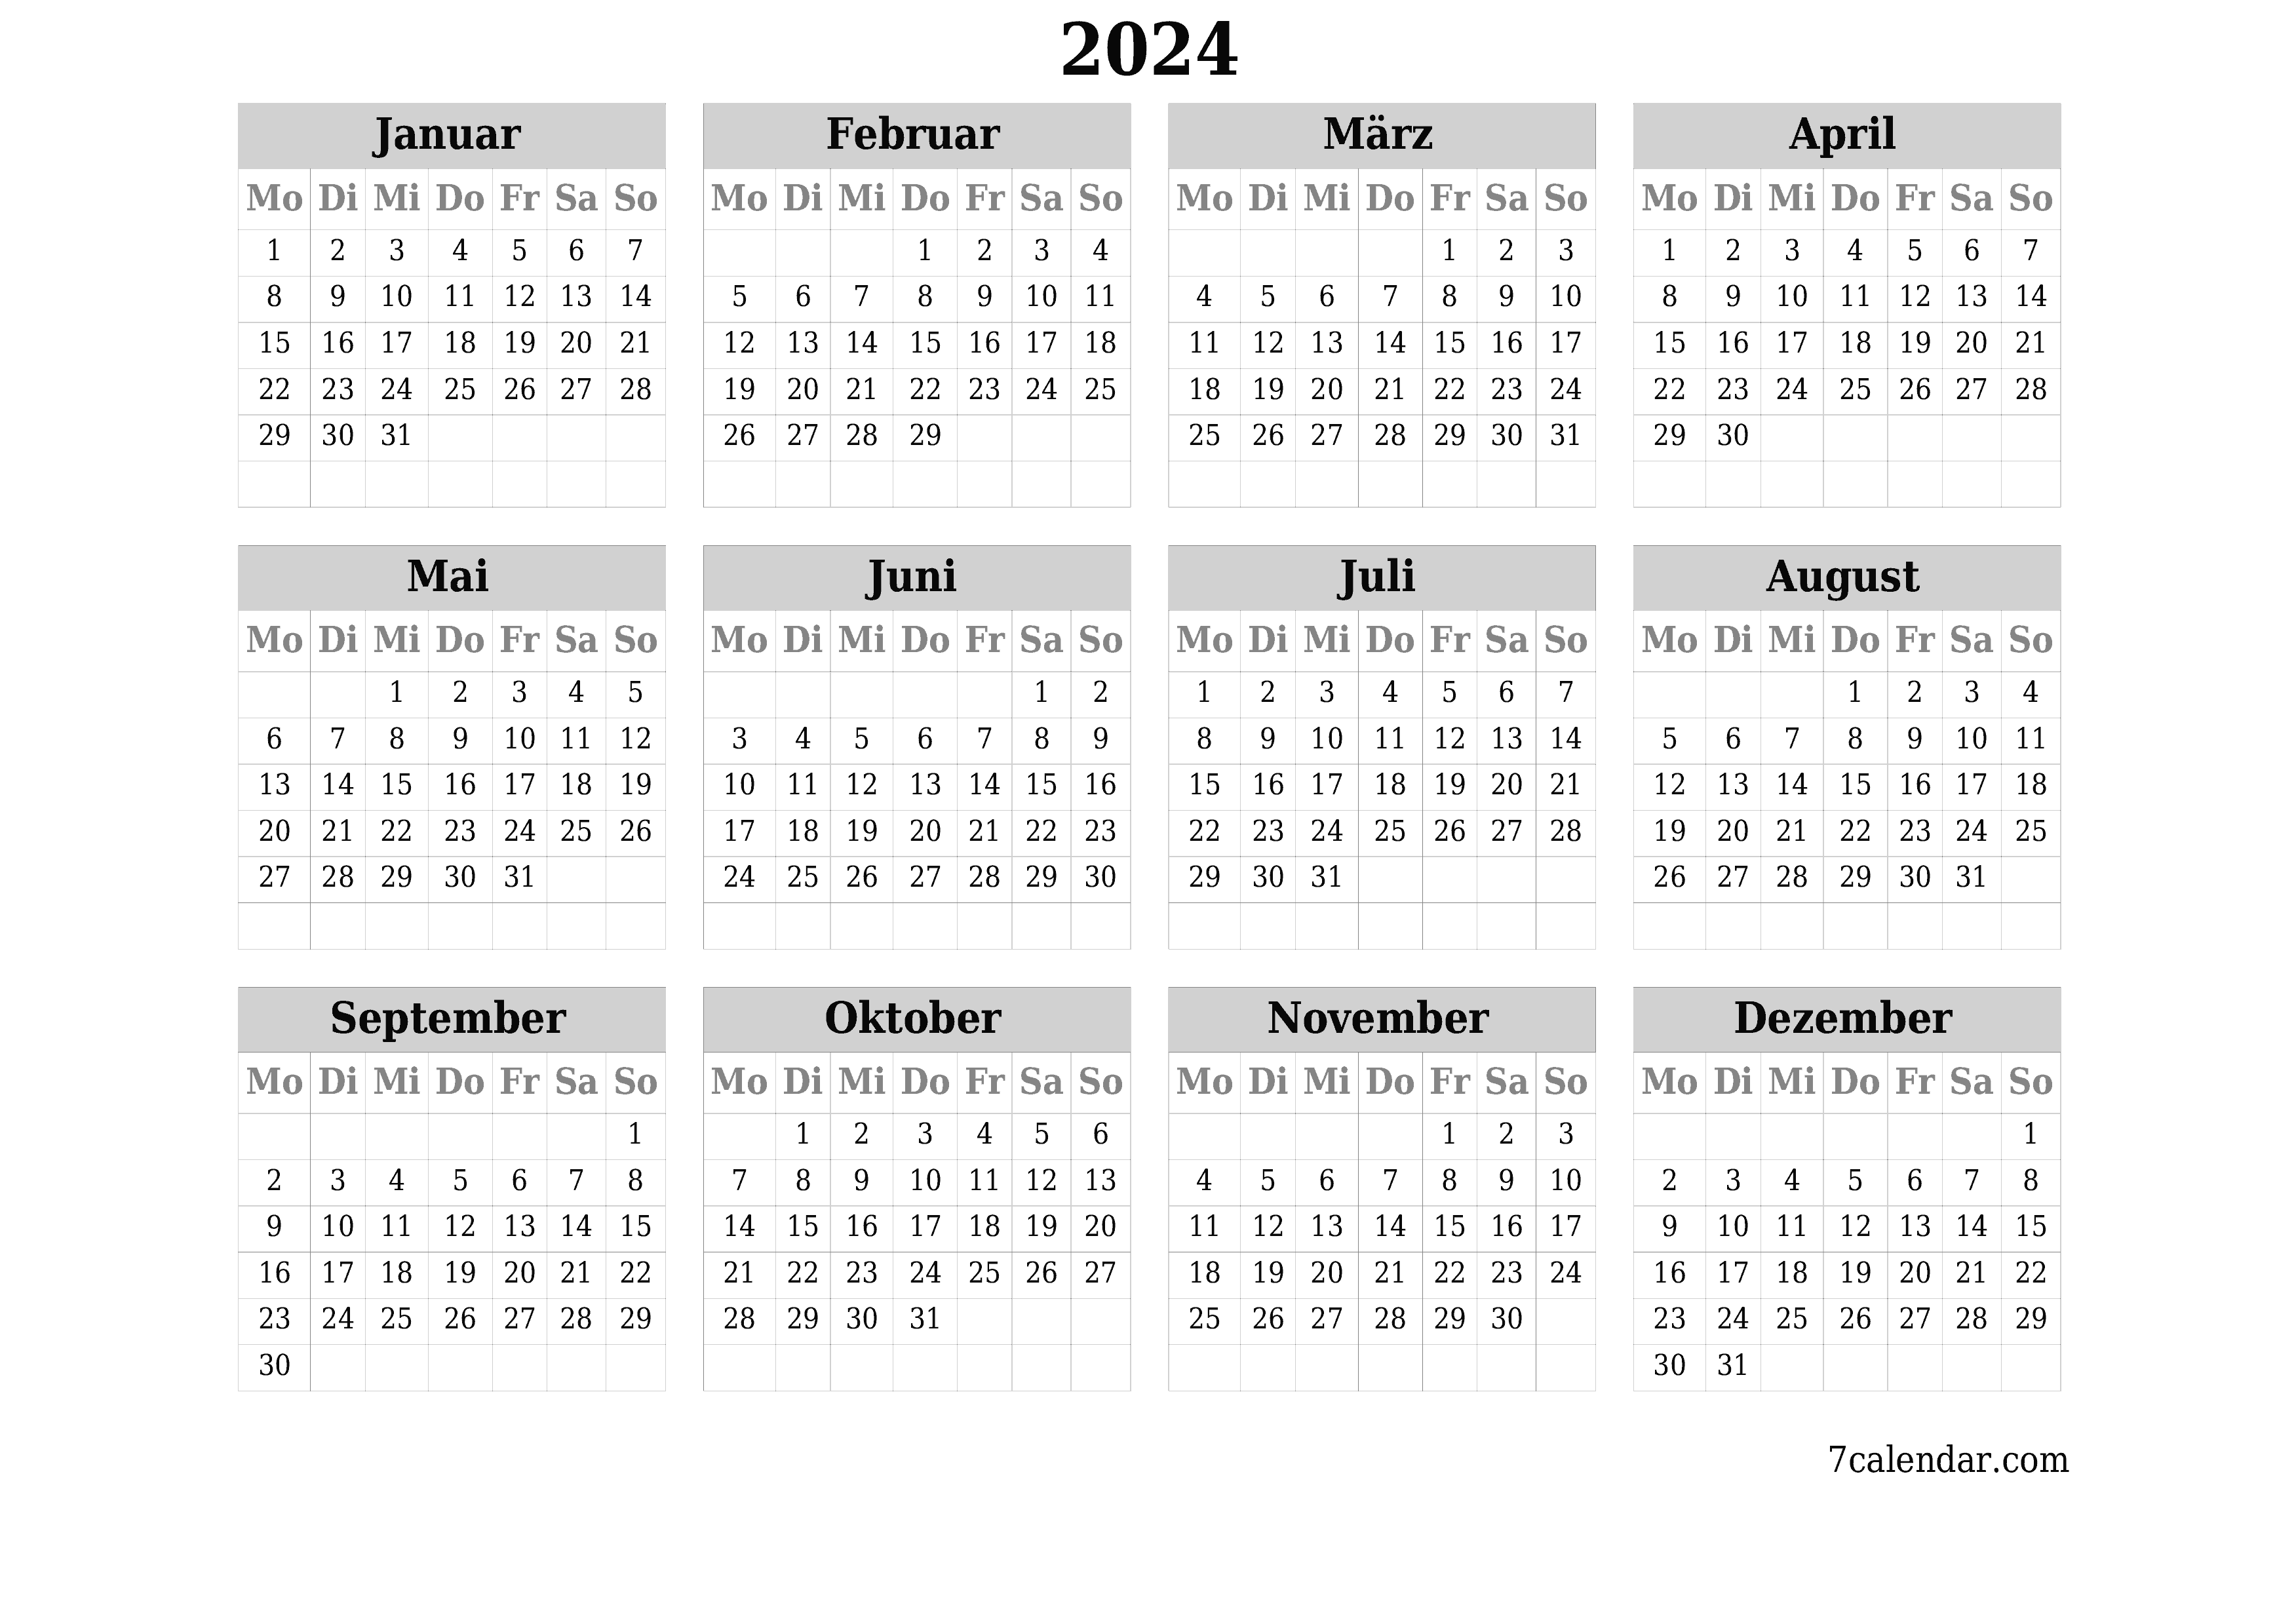 Jahresplanerkalender für das Jahr 2024 mit Notizen leeren, speichern und als PDF PNG German - 7calendar.com drucken